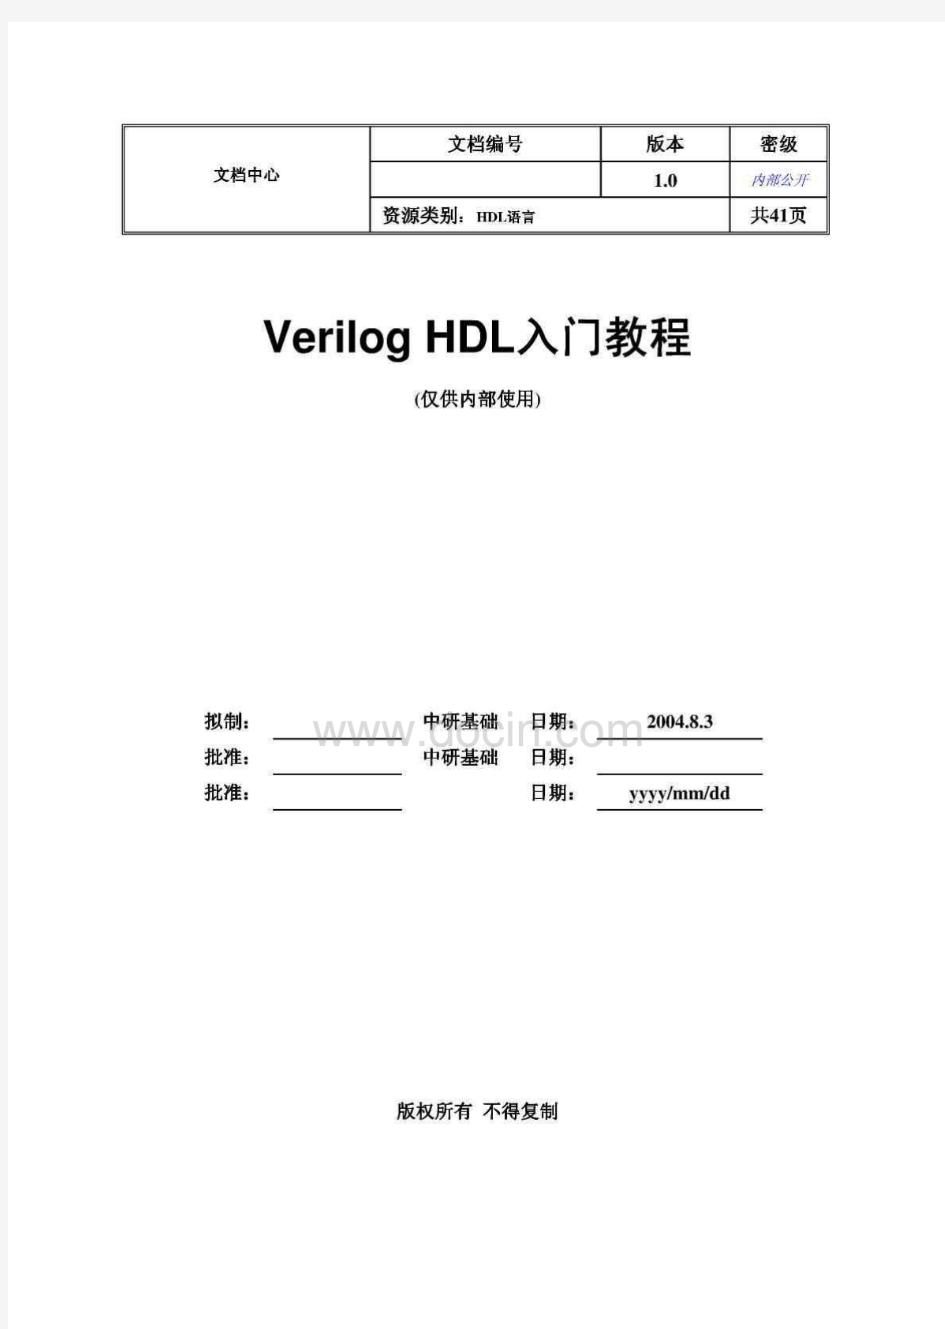 Verilog HDL 华为入门教程